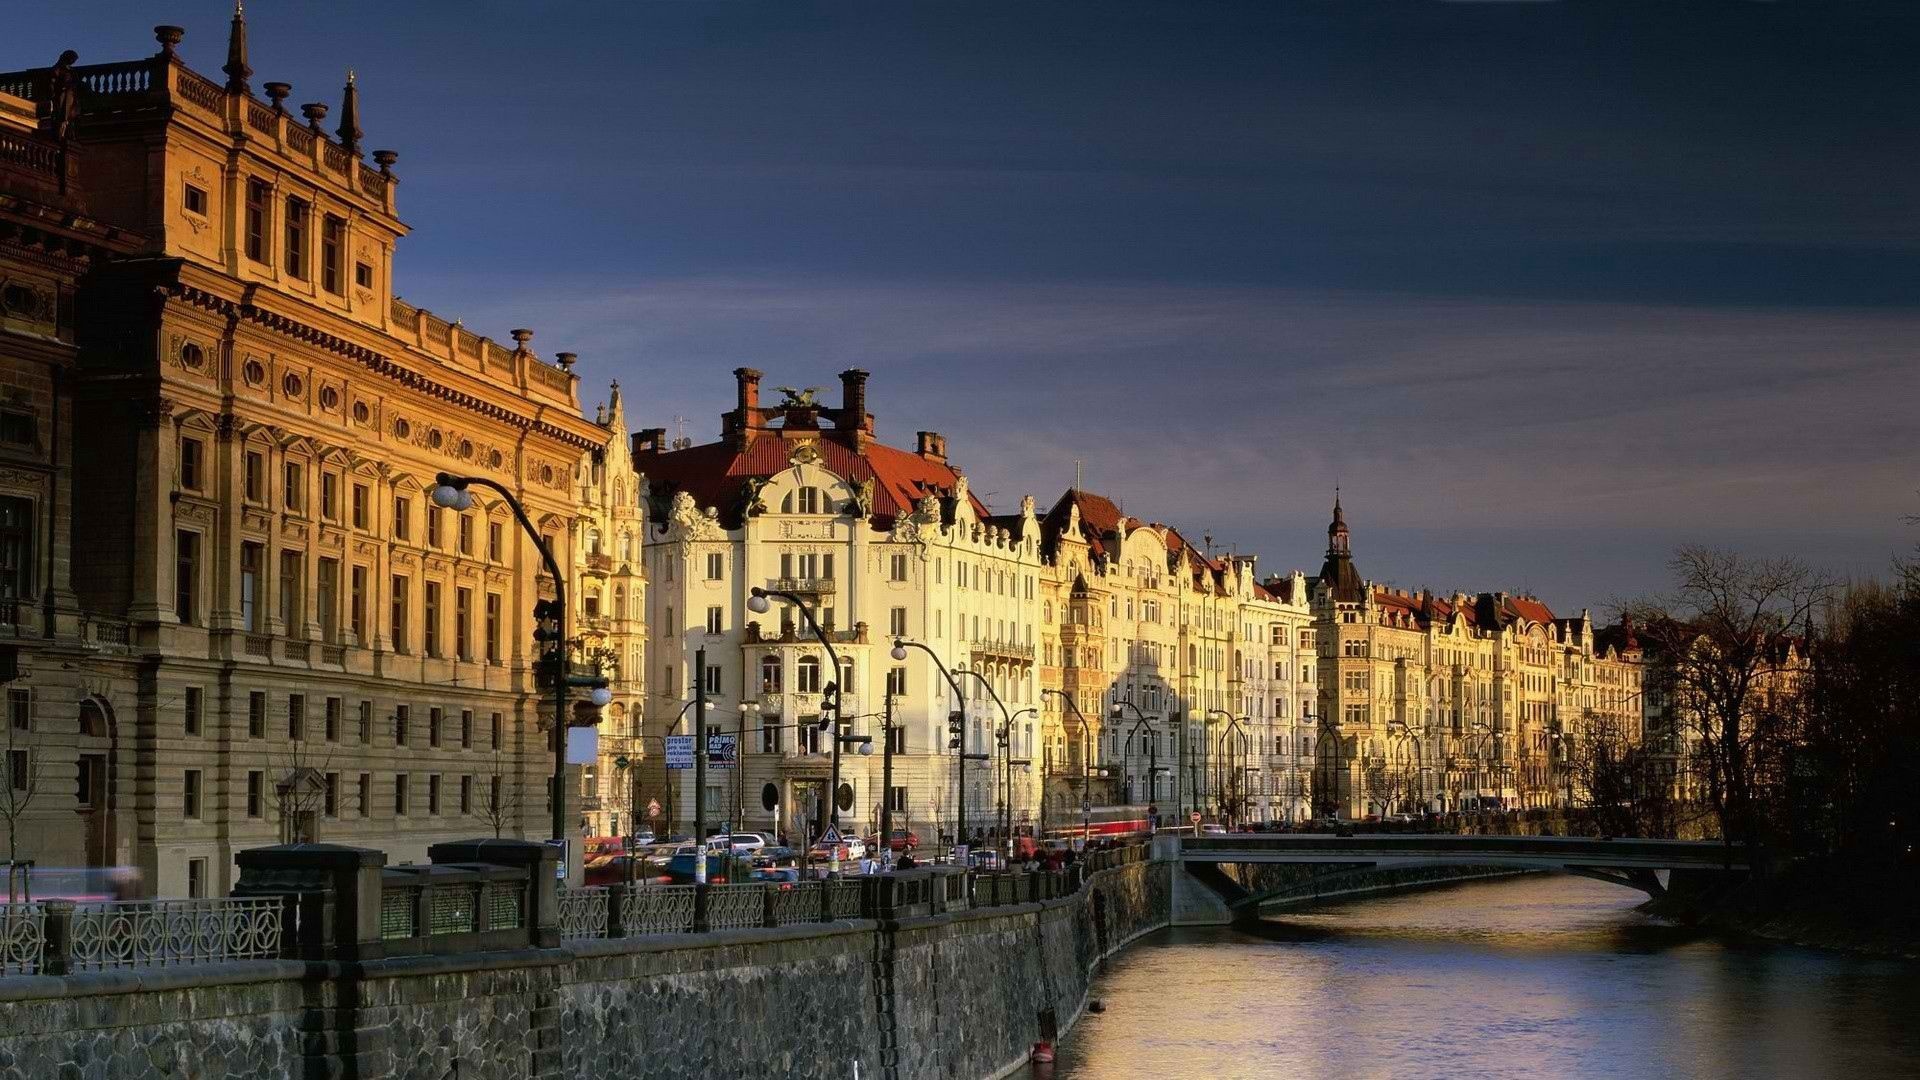 Czechia (Czech Republic): Vltava, Prague's river, Waterfront. 1920x1080 Full HD Wallpaper.